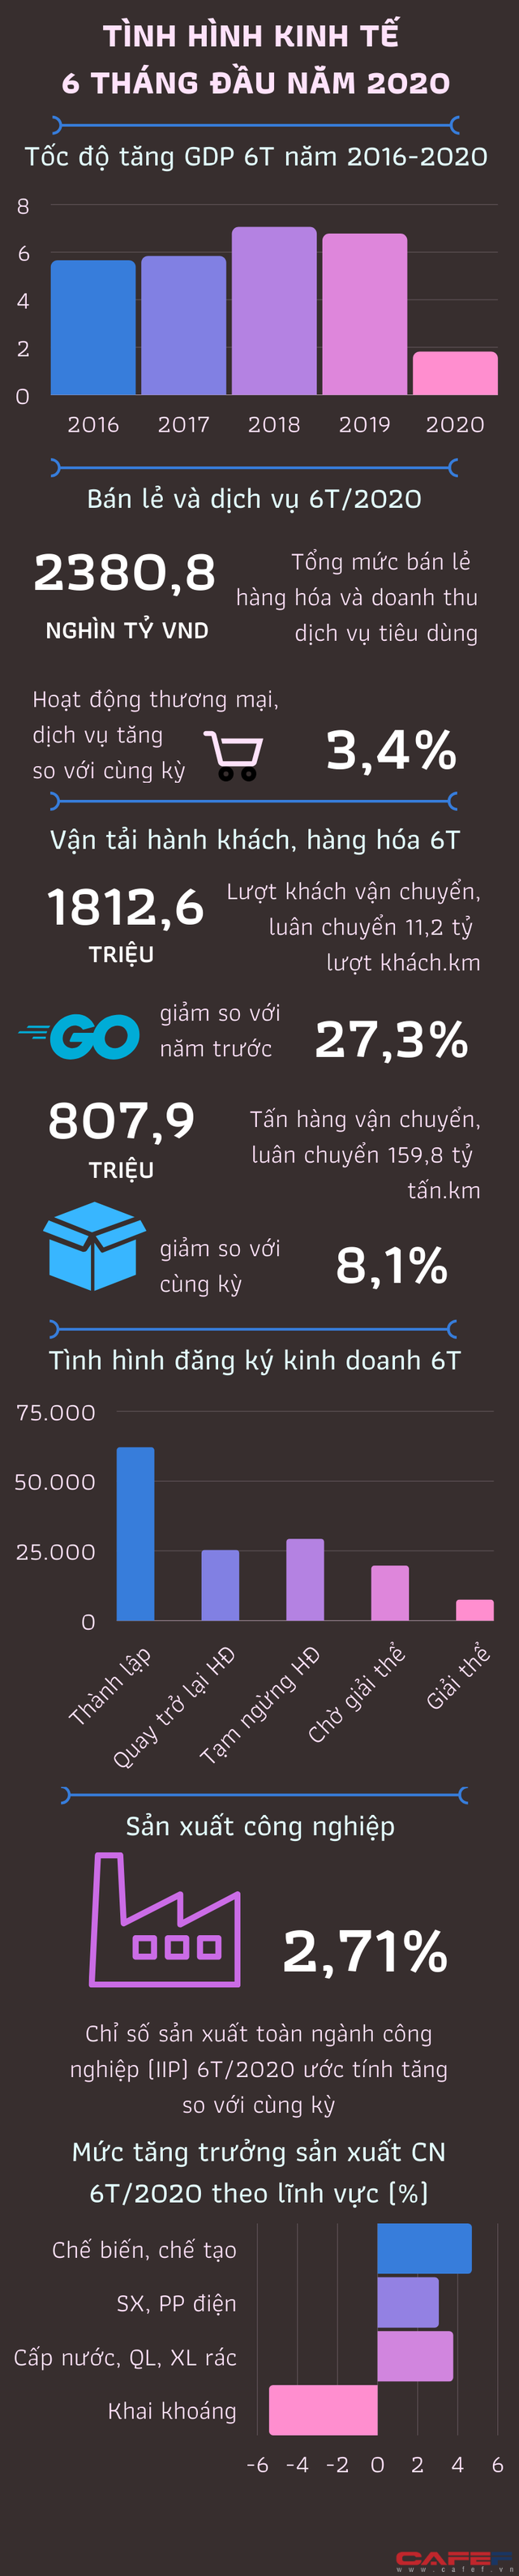  [Infographic] Tình hình kinh tế Việt Nam 6 tháng đầu năm qua những con số  - Ảnh 1.